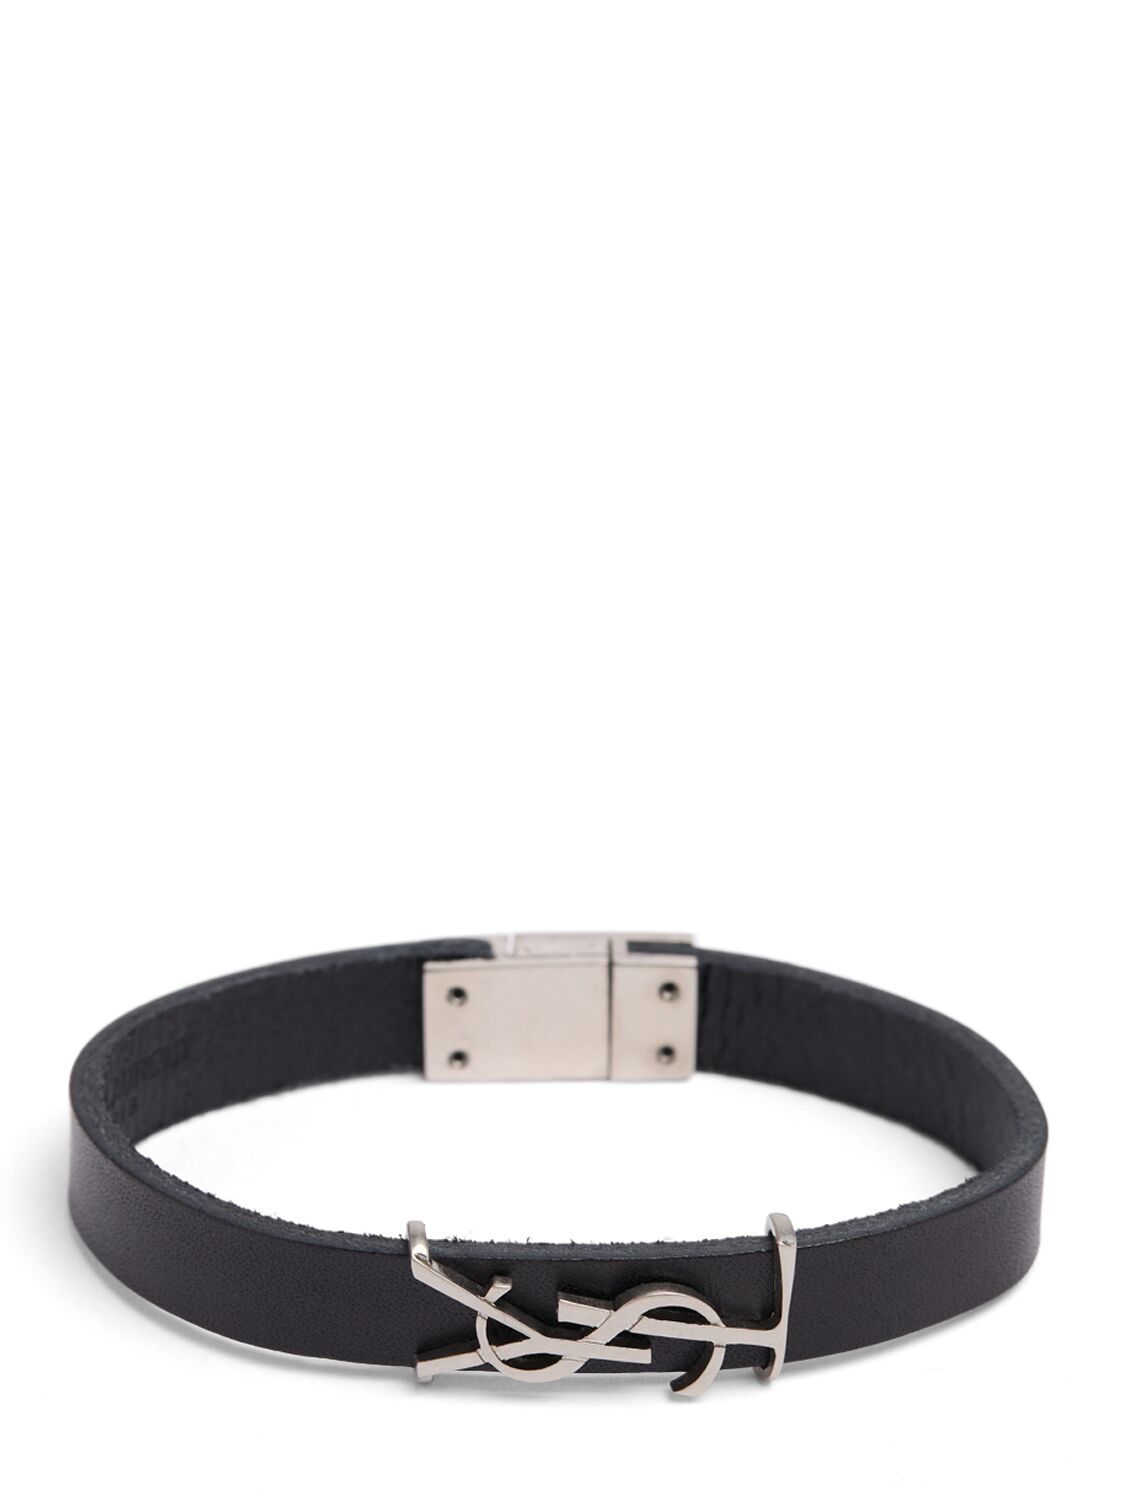 Ysl Leather Bracelet